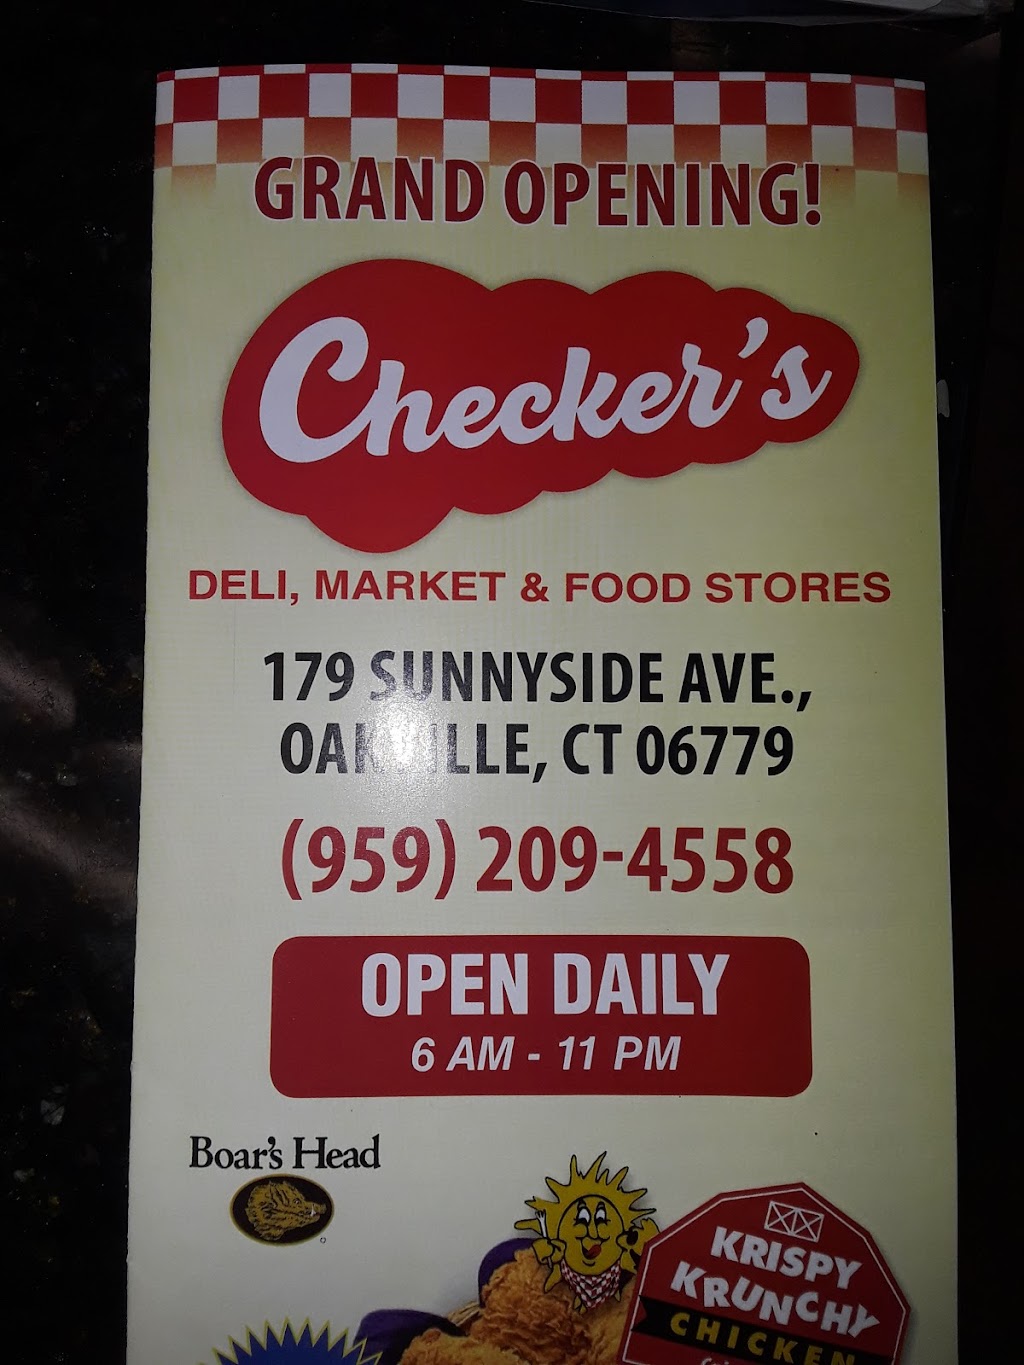 Checkers - Krispy Krunchy Chicken - Oakville | 179 Sunnyside Ave, Oakville, CT 06779 | Phone: (959) 209-4558